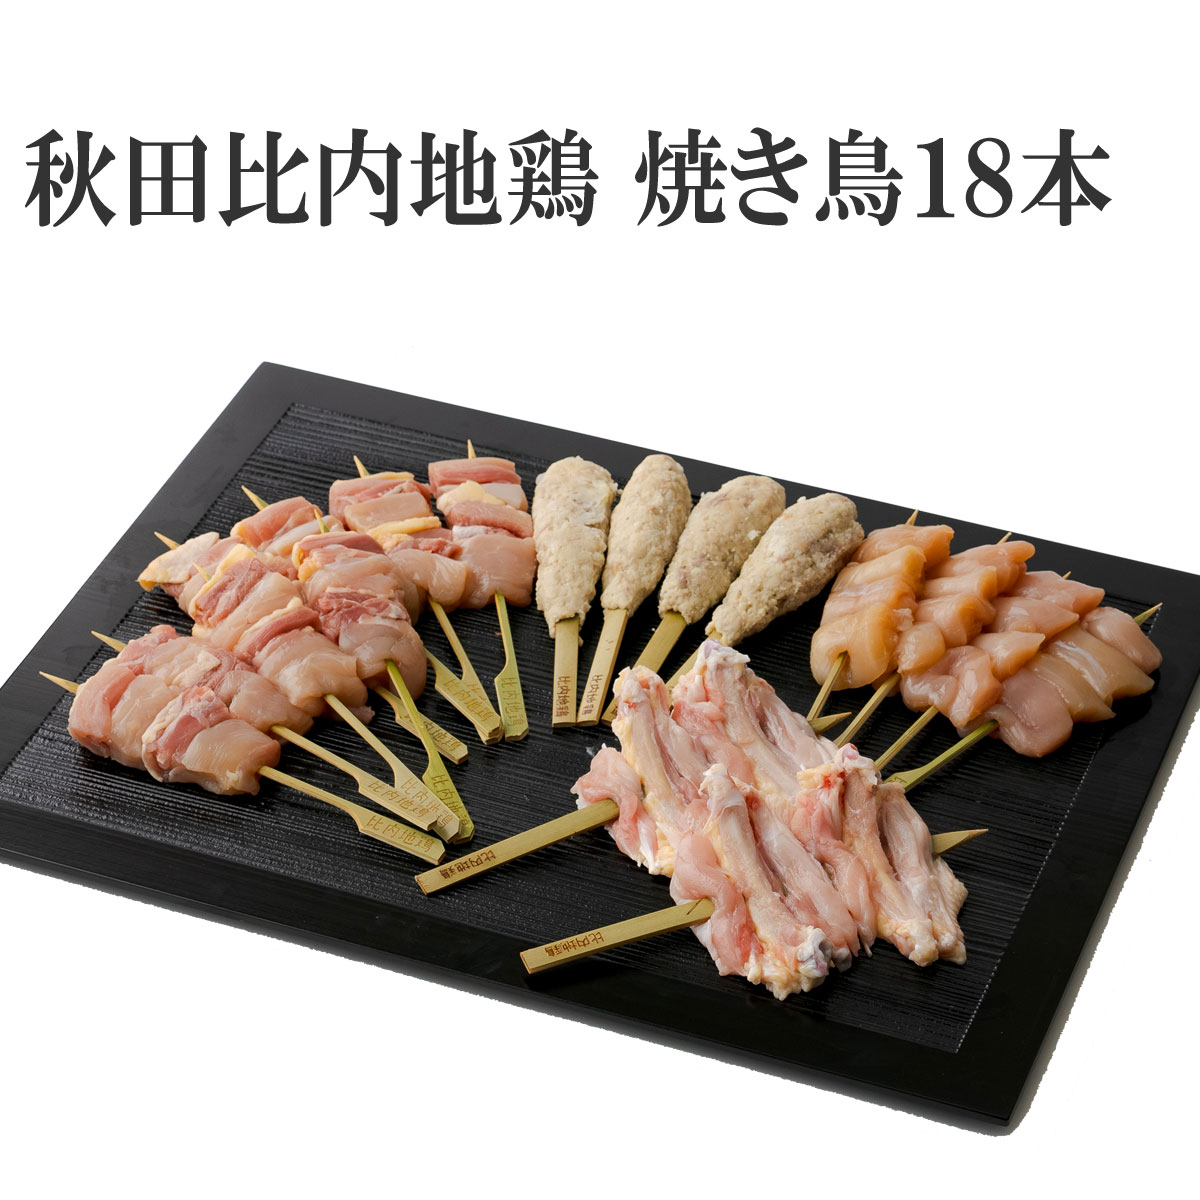 【おつまみ】ごちそう 秋田 比内地鶏 焼き鳥 セット 18本 正肉 ( もも むね ) ささみ いか ...